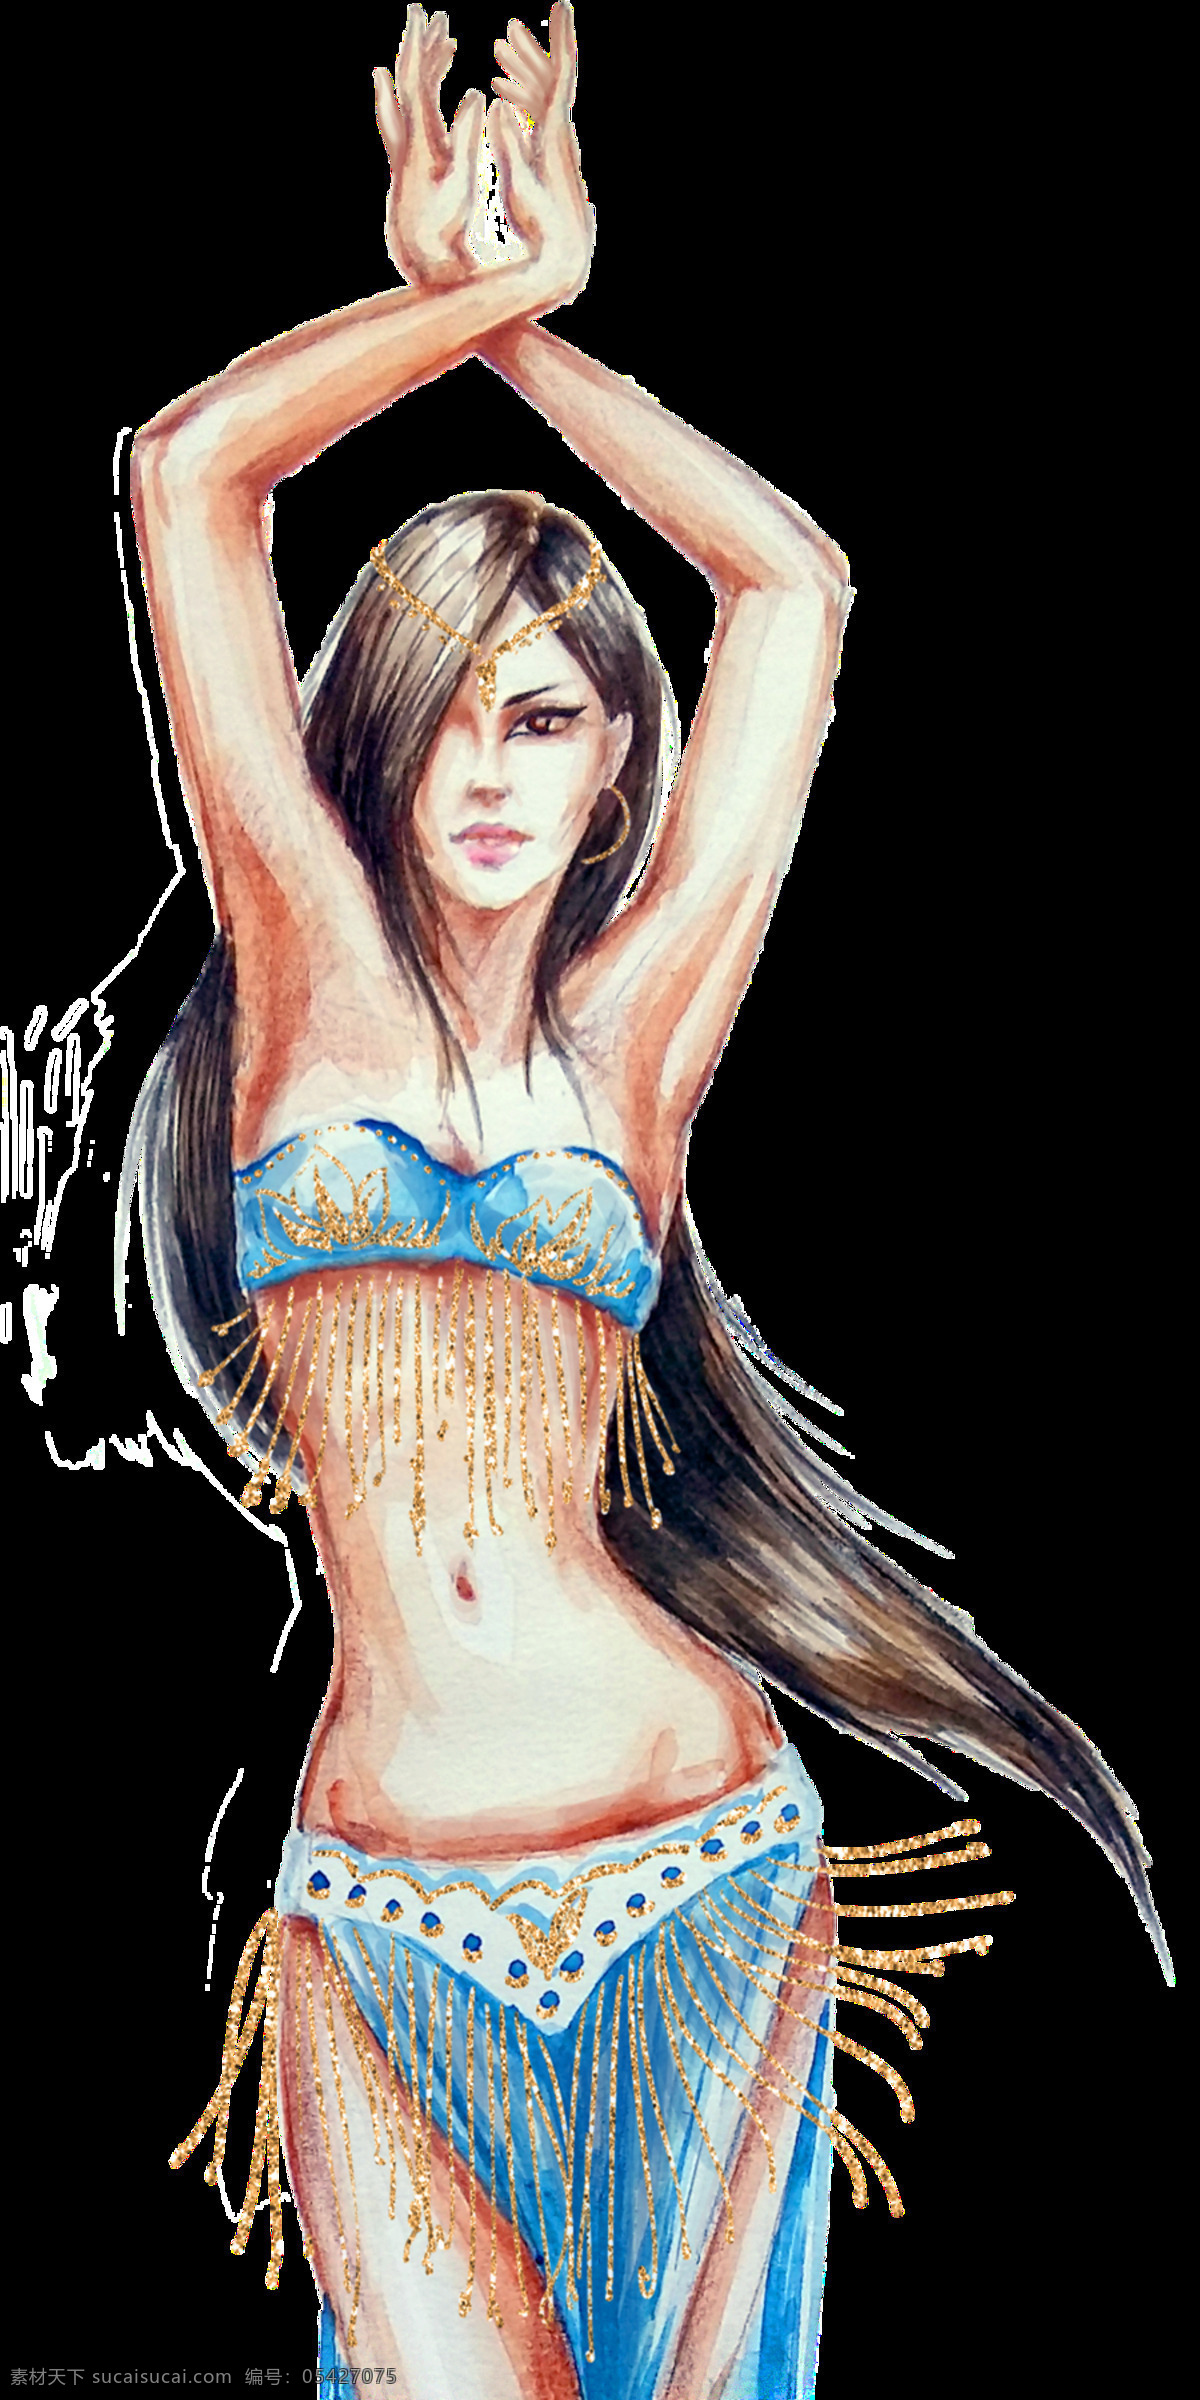 跳舞 女性 卡通 透明 装饰 设计素材 背景素材